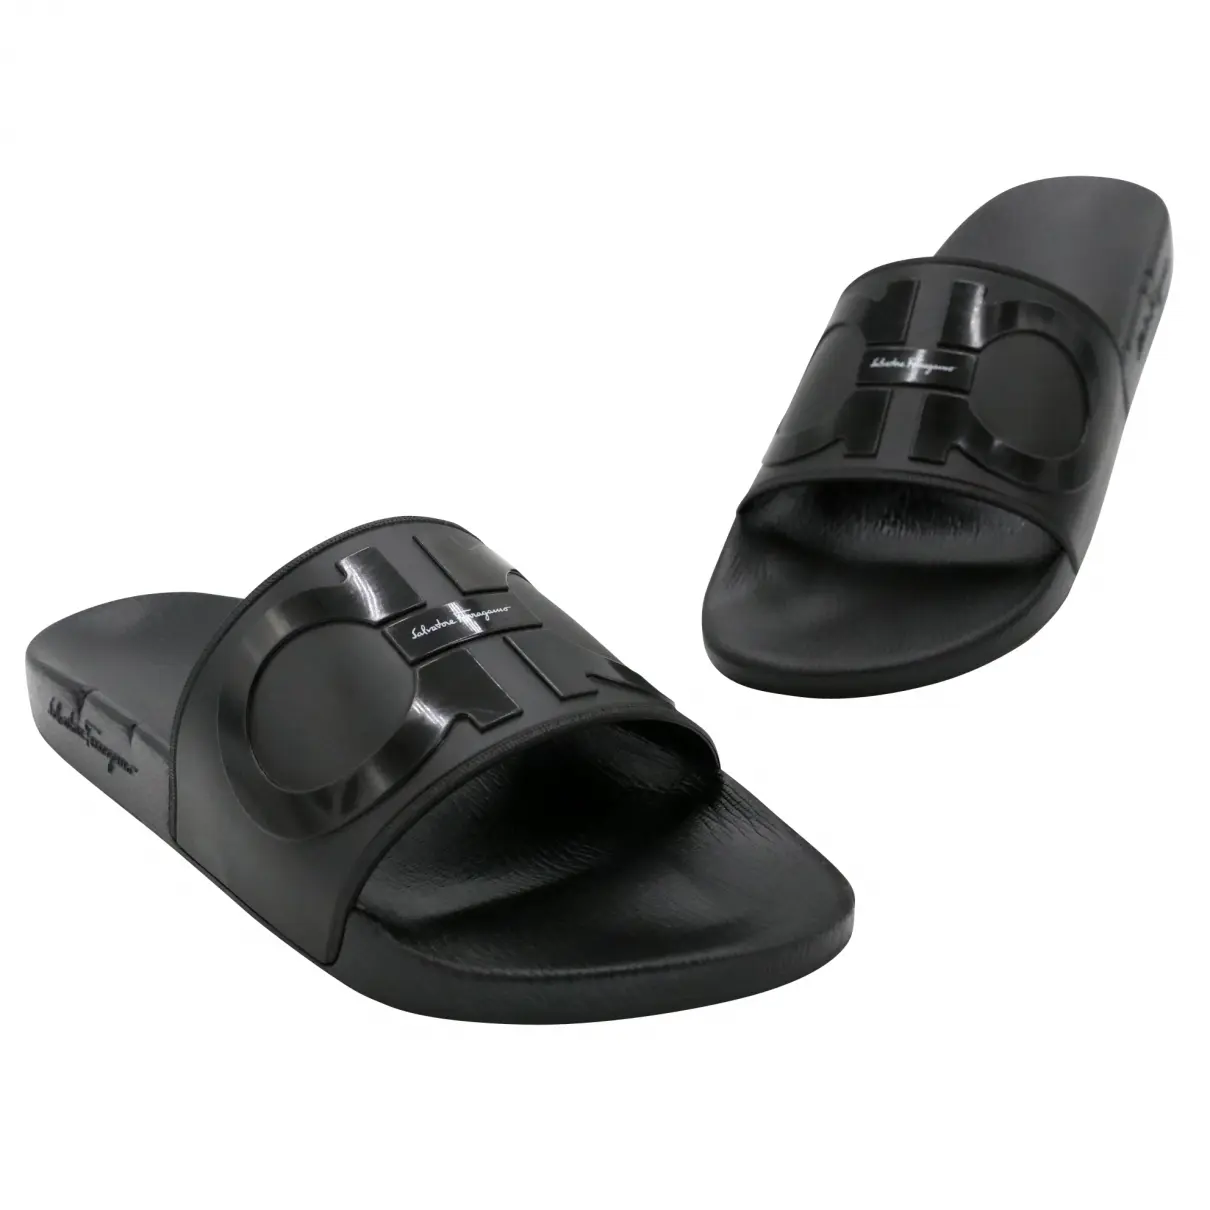 Sandals Salvatore Ferragamo Black size 9 US in Rubber - 25253177